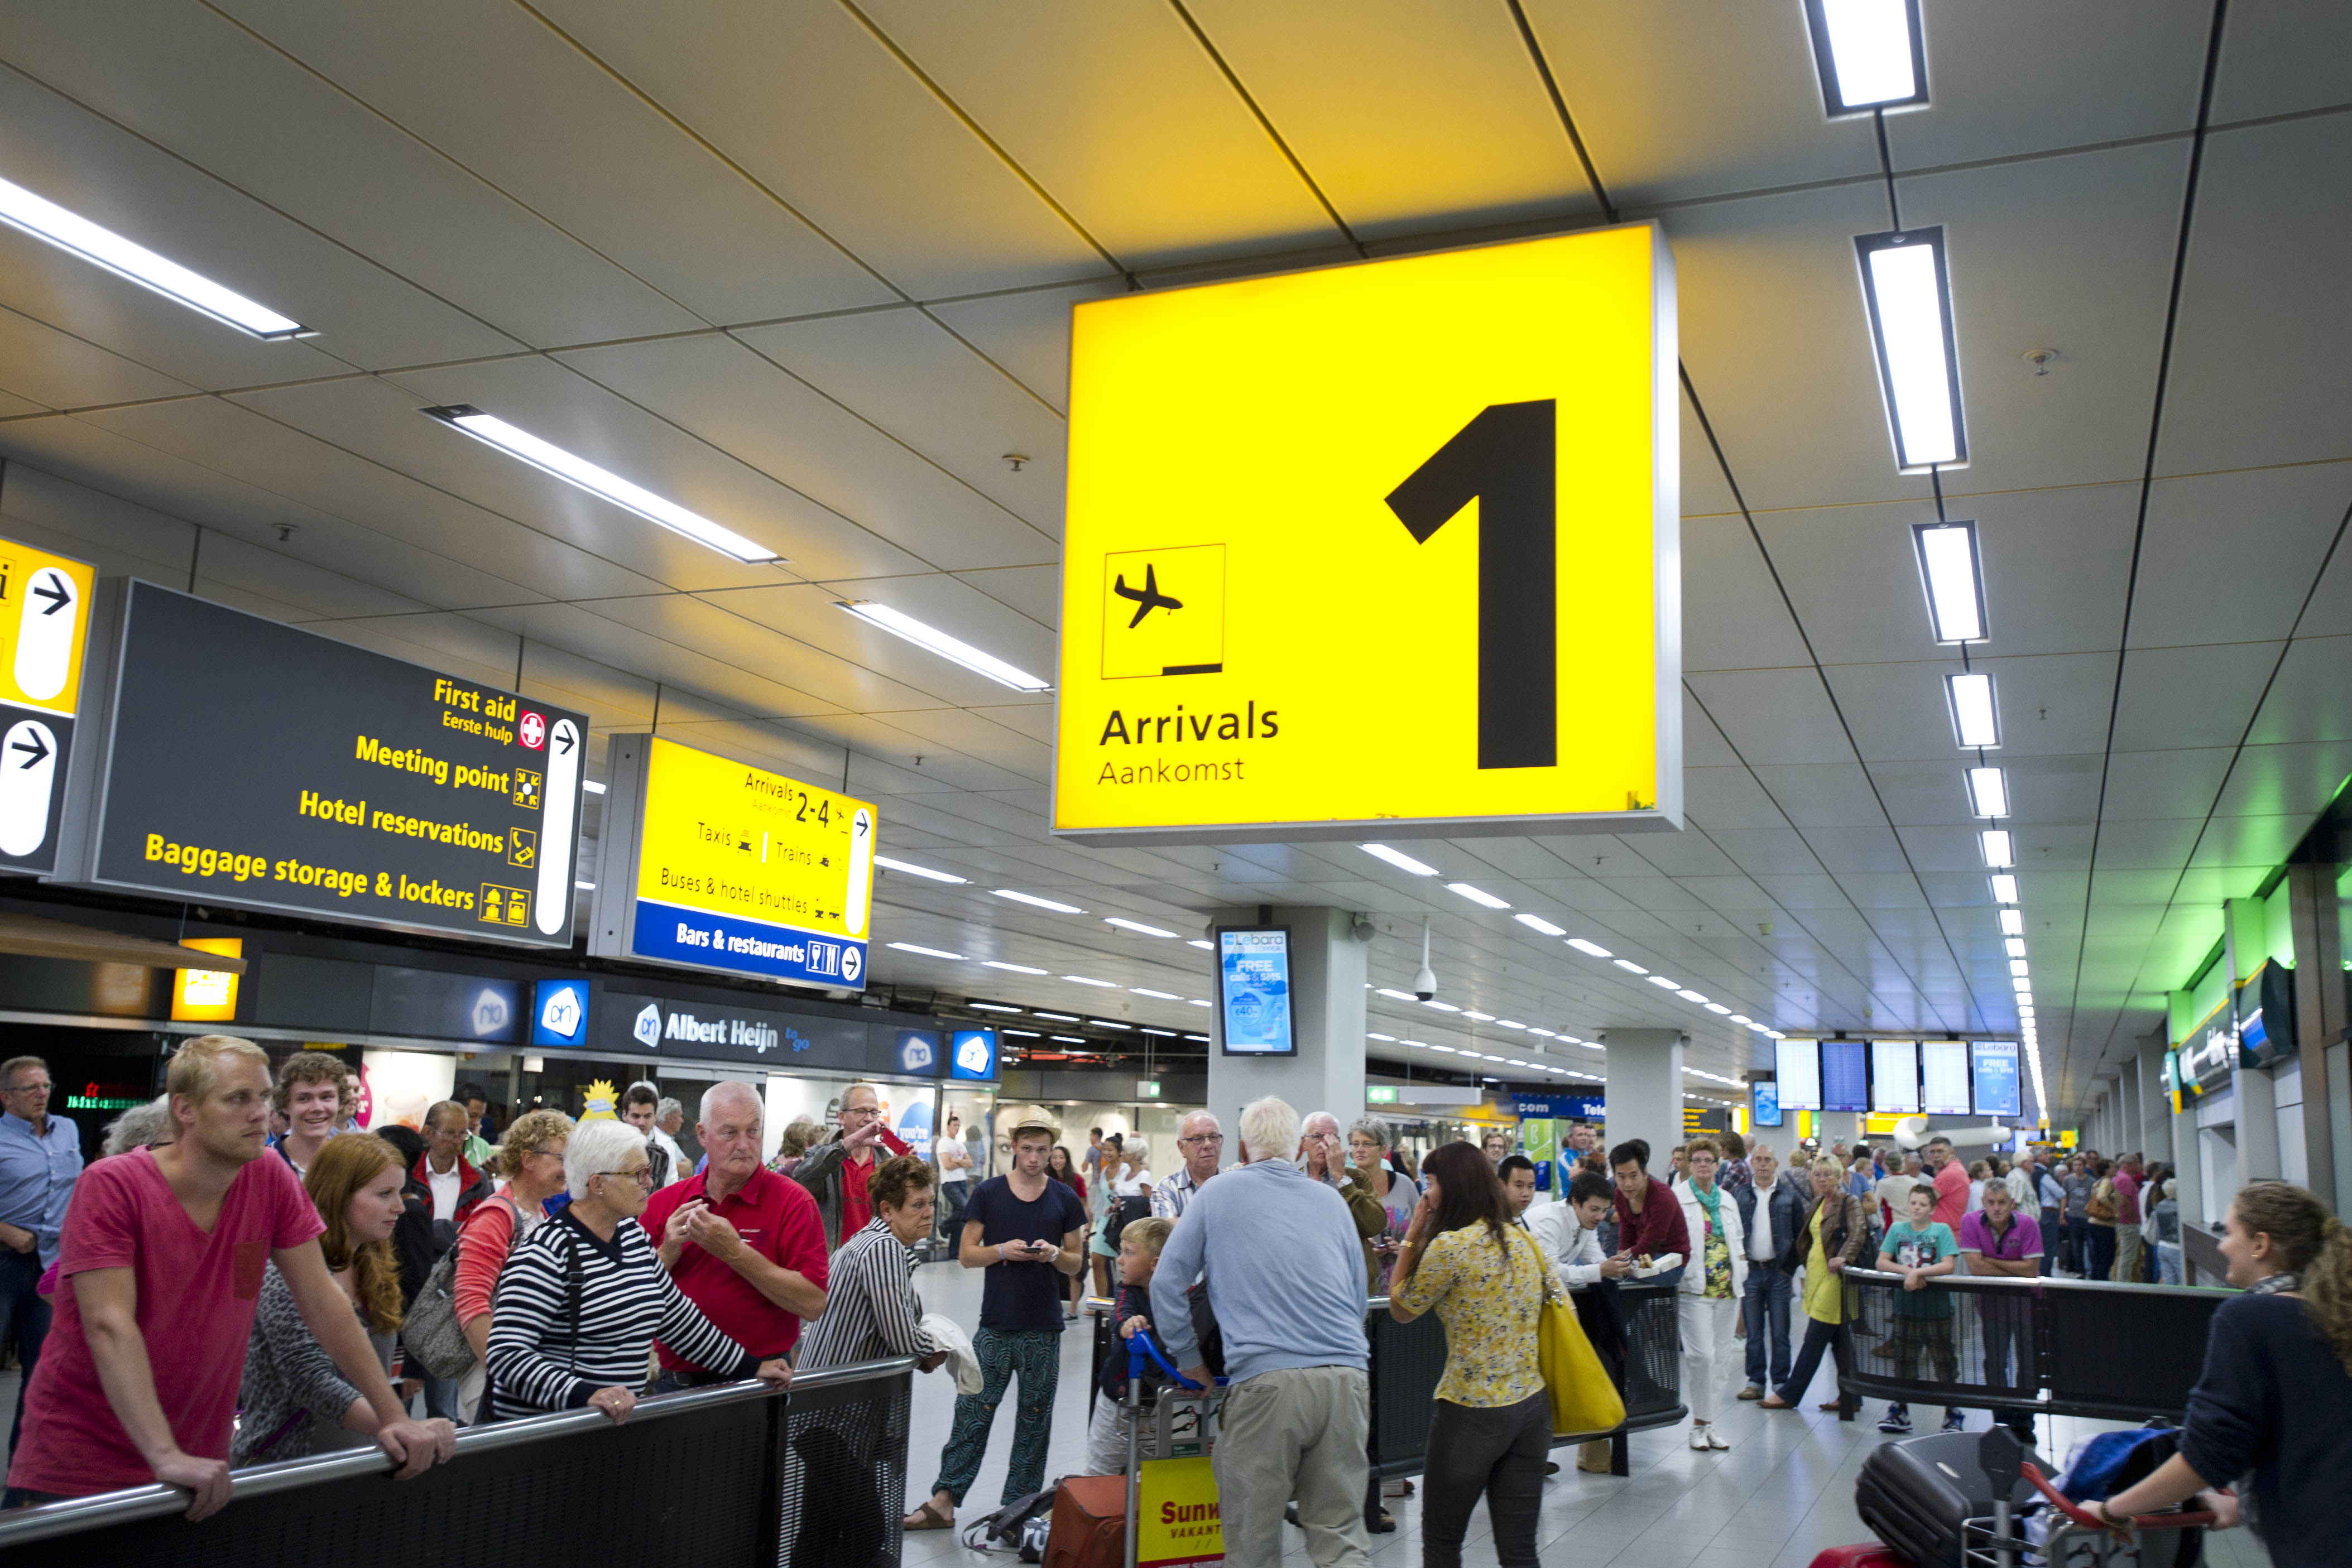 Luchthaven Schiphol heeft een goed eerste half jaar achter de rug. Zowel de nettowinst als de omzet stegen, evenals het aantal passagiers. Het vliegveld kreeg iets minder vliegtuigen te verwerken, meldde Schiphol donderdag in zijn halfjaarbericht.